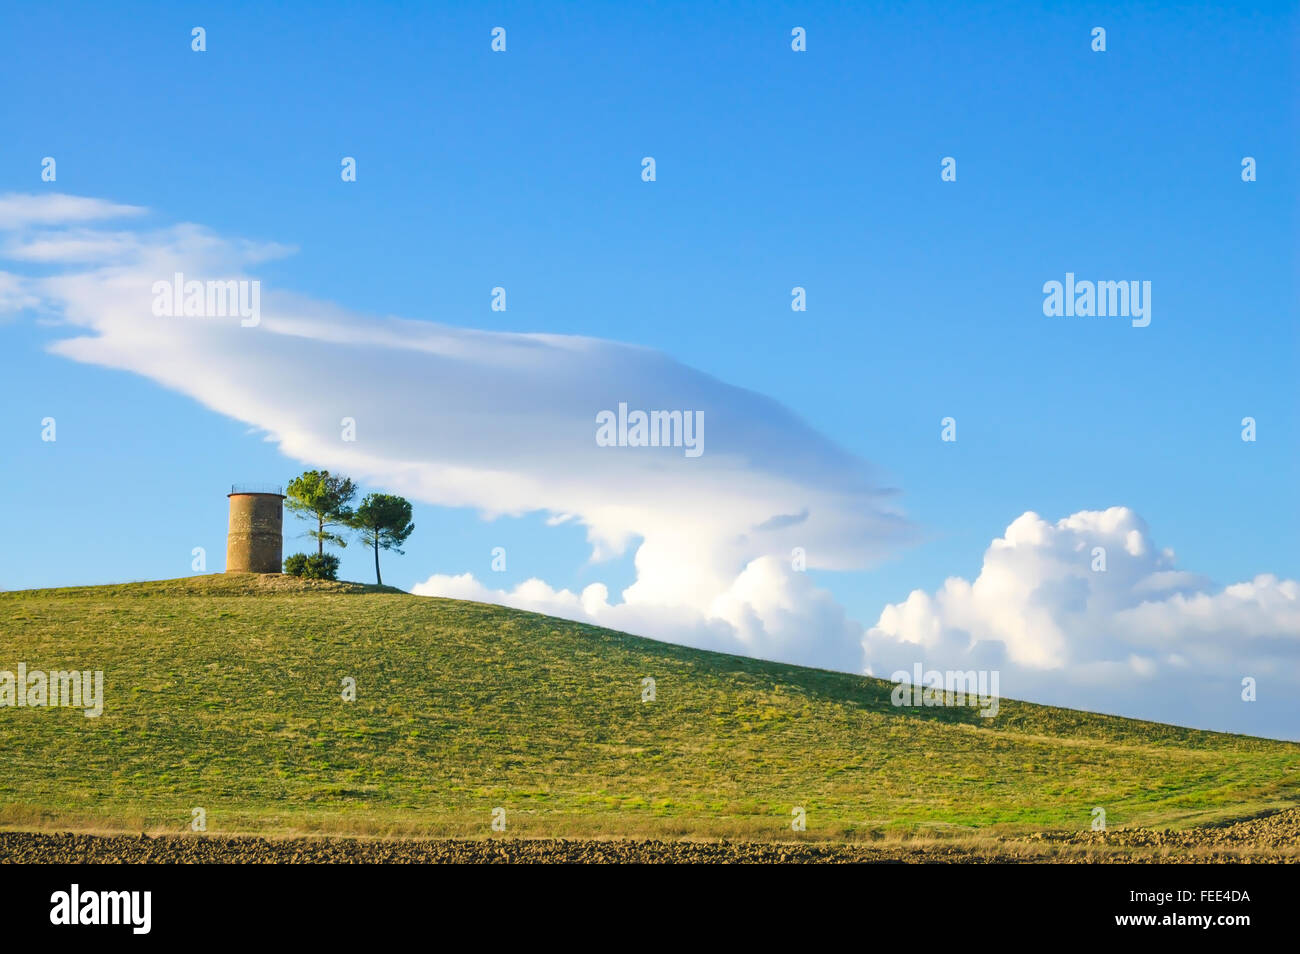 La Maremma toscana, paisaje típico paisaje con colinas, árboles y torre rural. Foto de stock